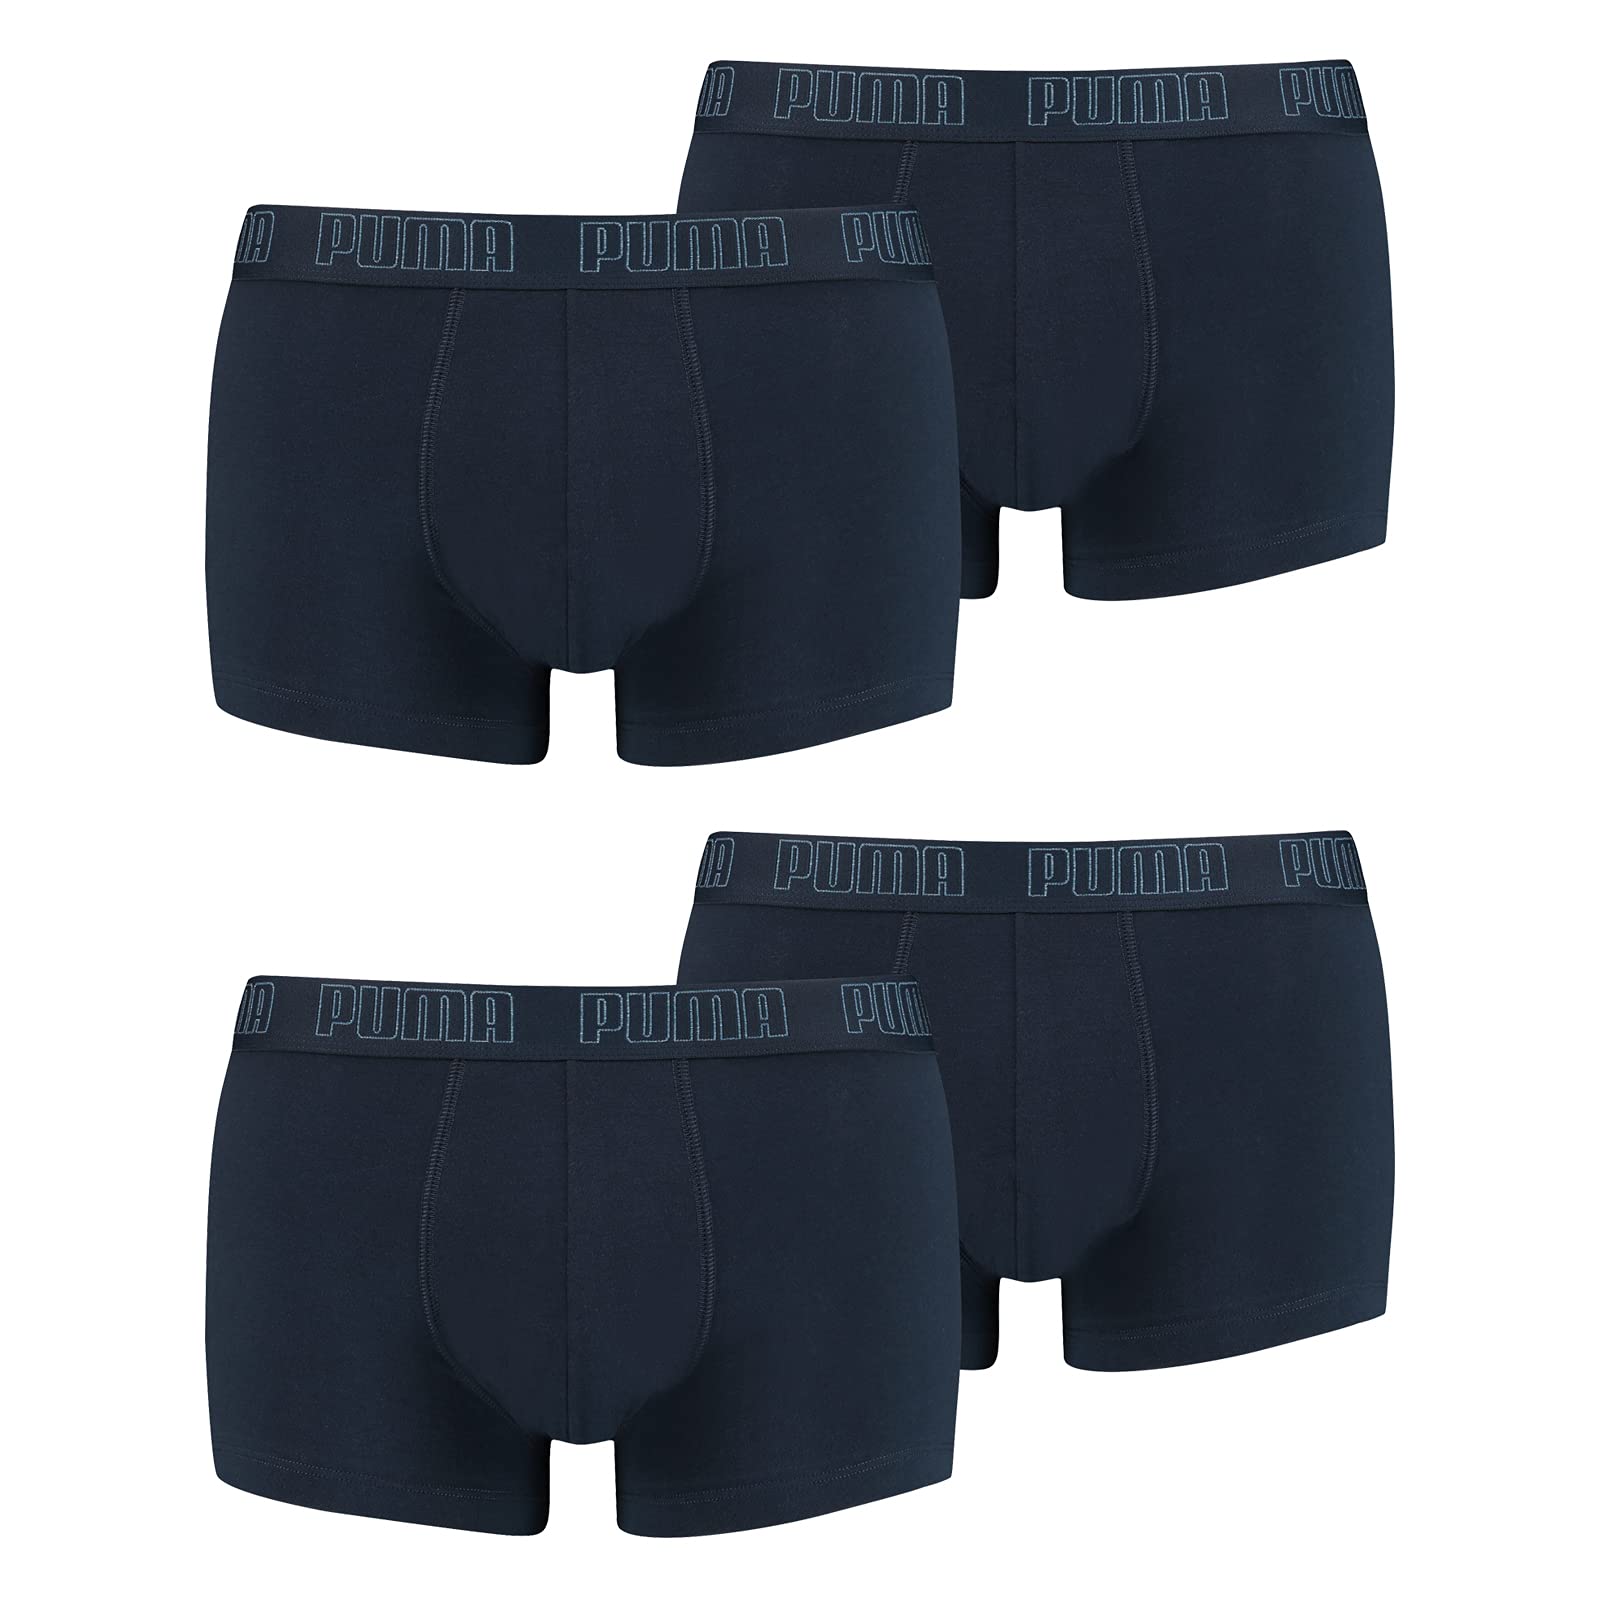 PUMA Herren Shortboxer Unterhosen Trunks 4er Pack, Wäschegröße:L, Artikel:-010 Navy